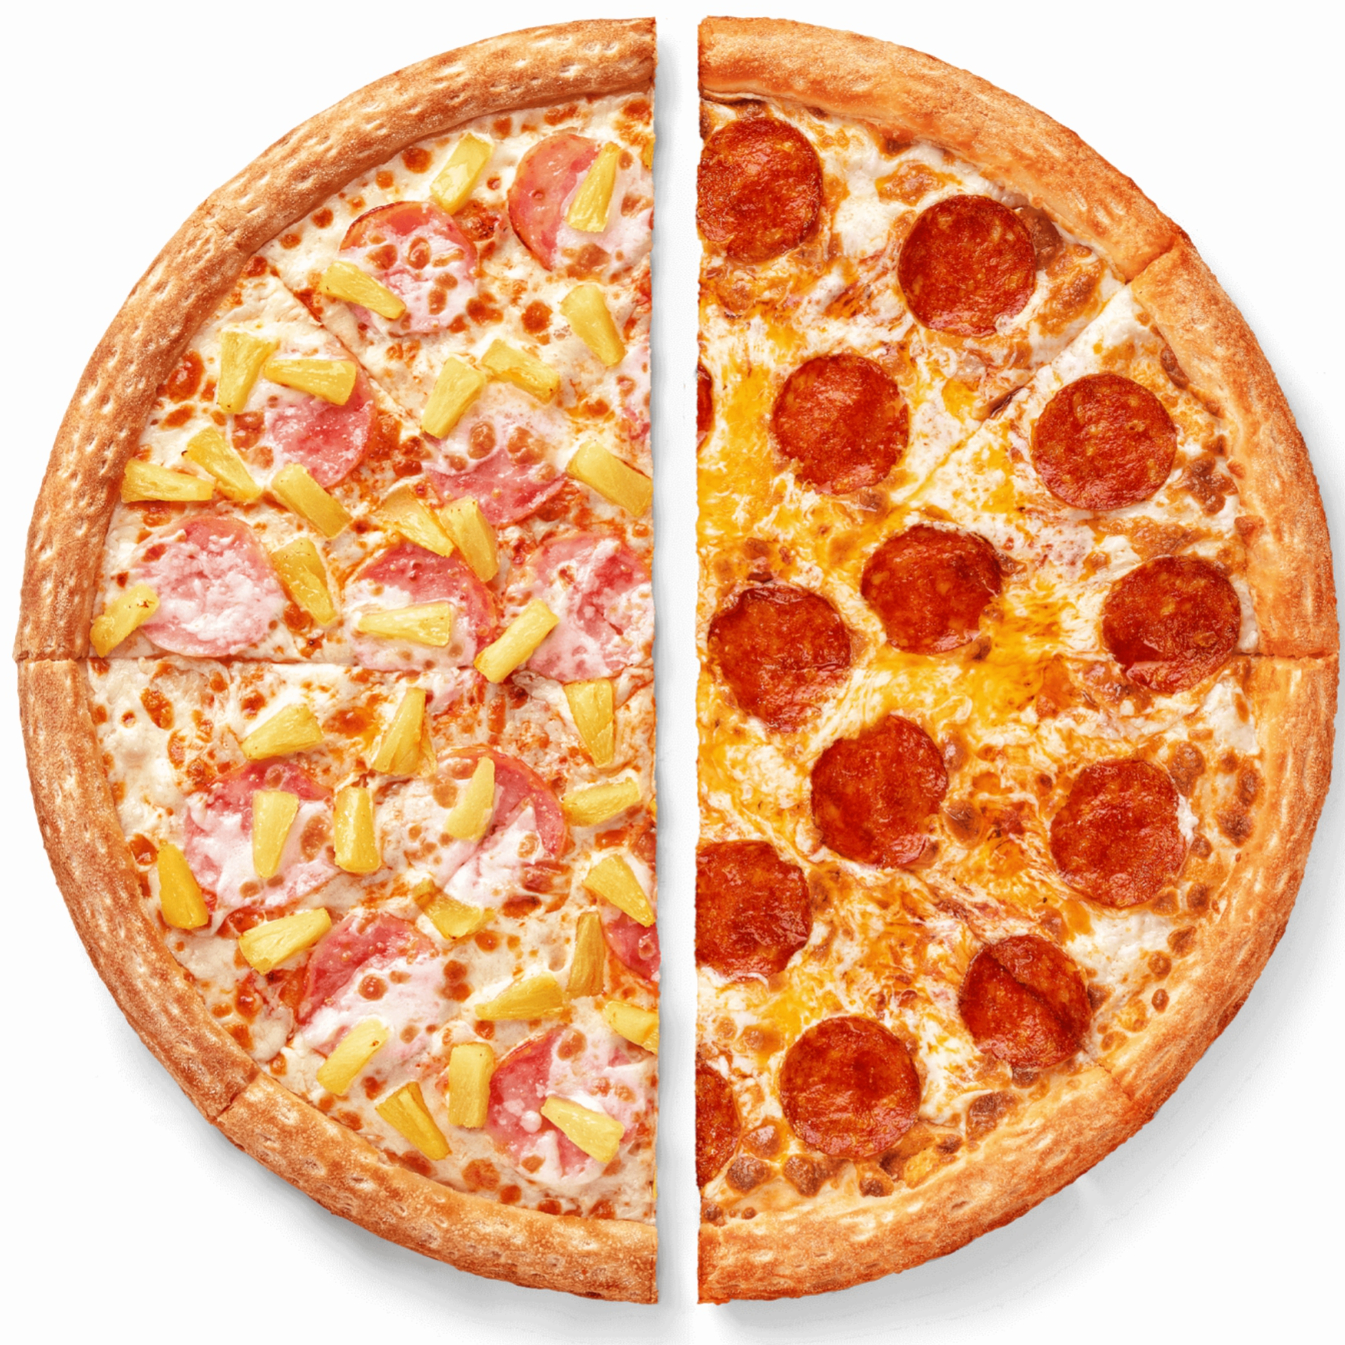 роман хочет заказать пиццу с двумя разными дополнительными начинками для пиццы (120) фото